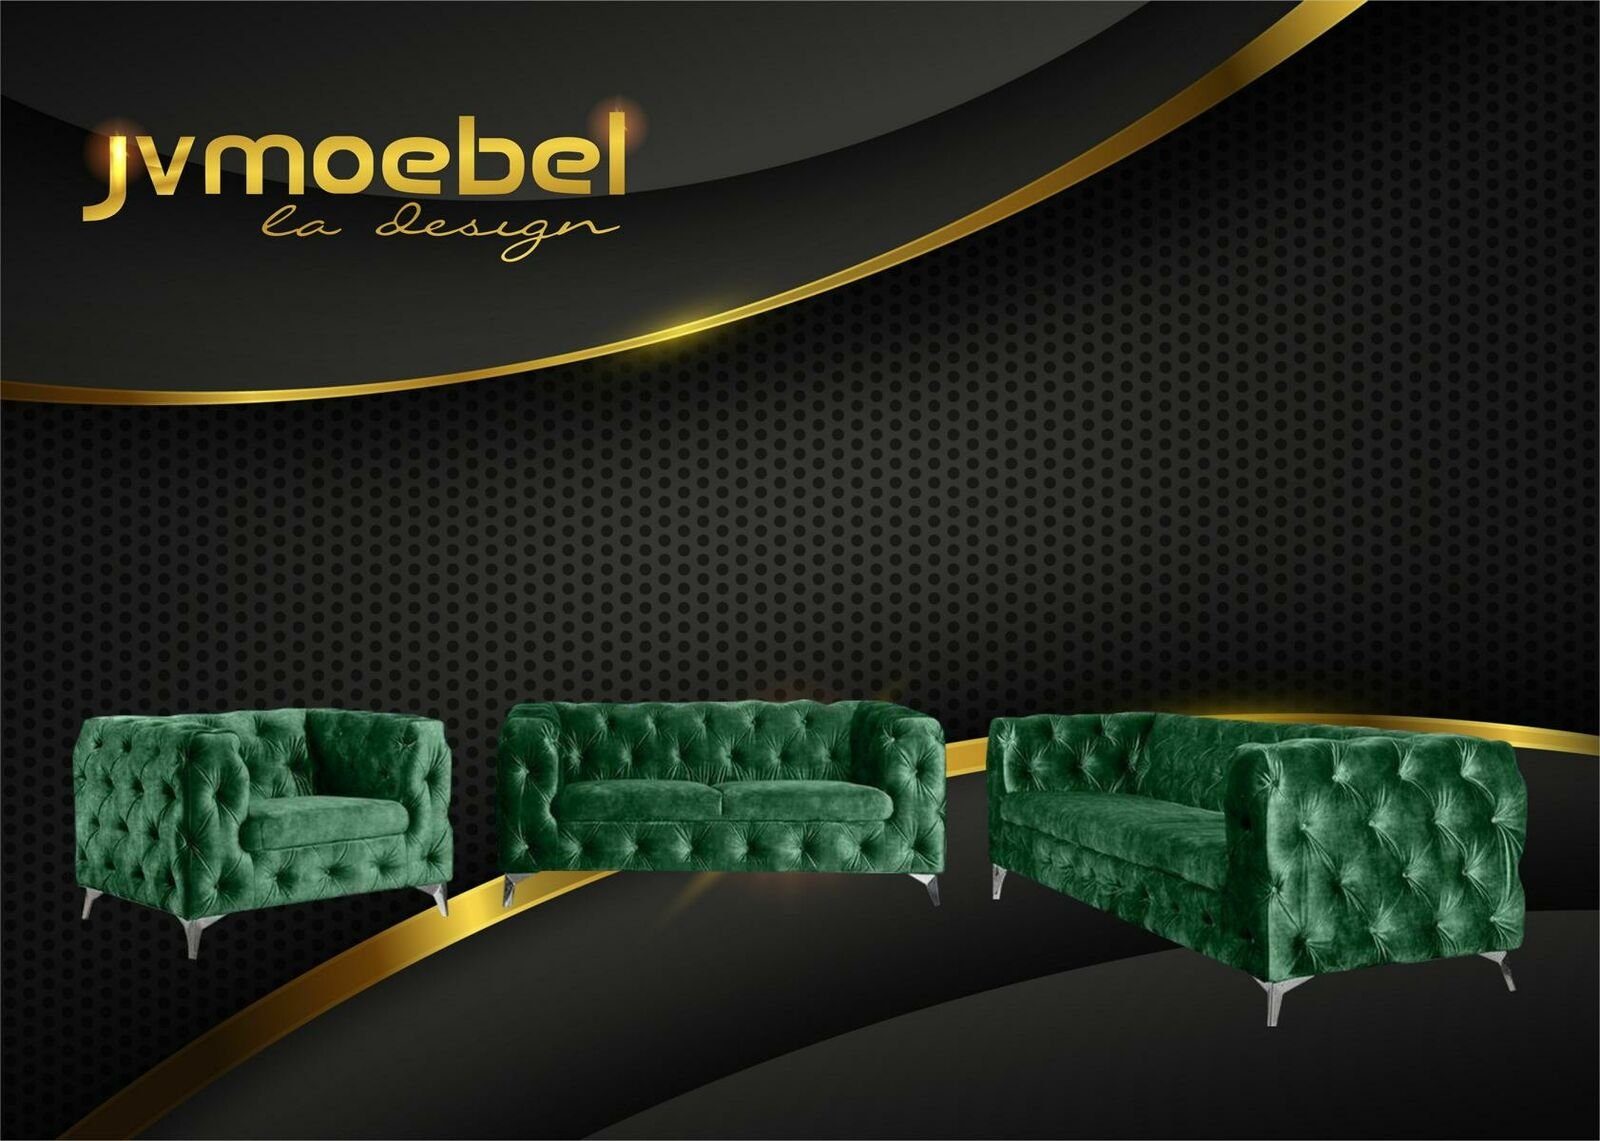 JVmoebel Chesterfield-Sofa, Sofagarnitur 321 Sitzer Textil Couch Chesterfield Wohnlandschaft Garnitur Design Grün | Chesterfield-Sofas